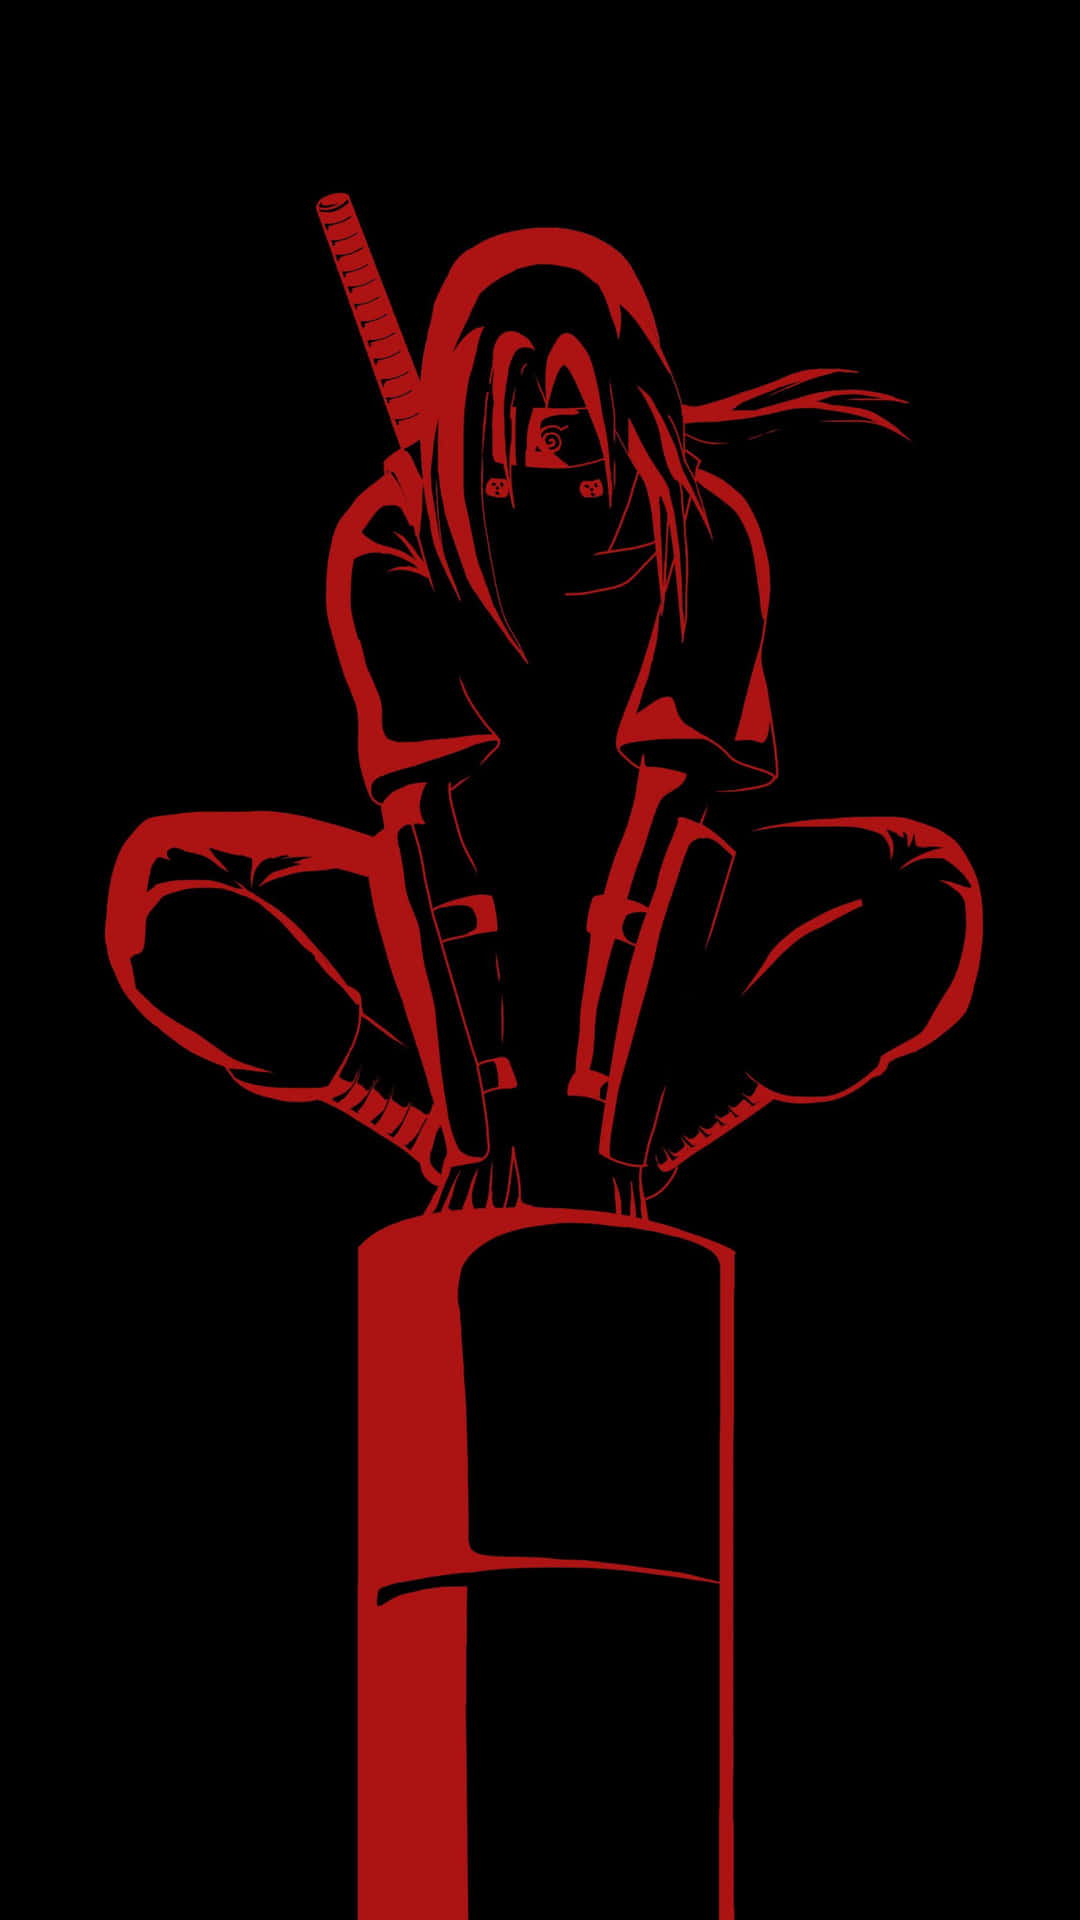 Etsort Og Rødt Billede Af En Ninja, Der Sidder På En Søjle. Wallpaper